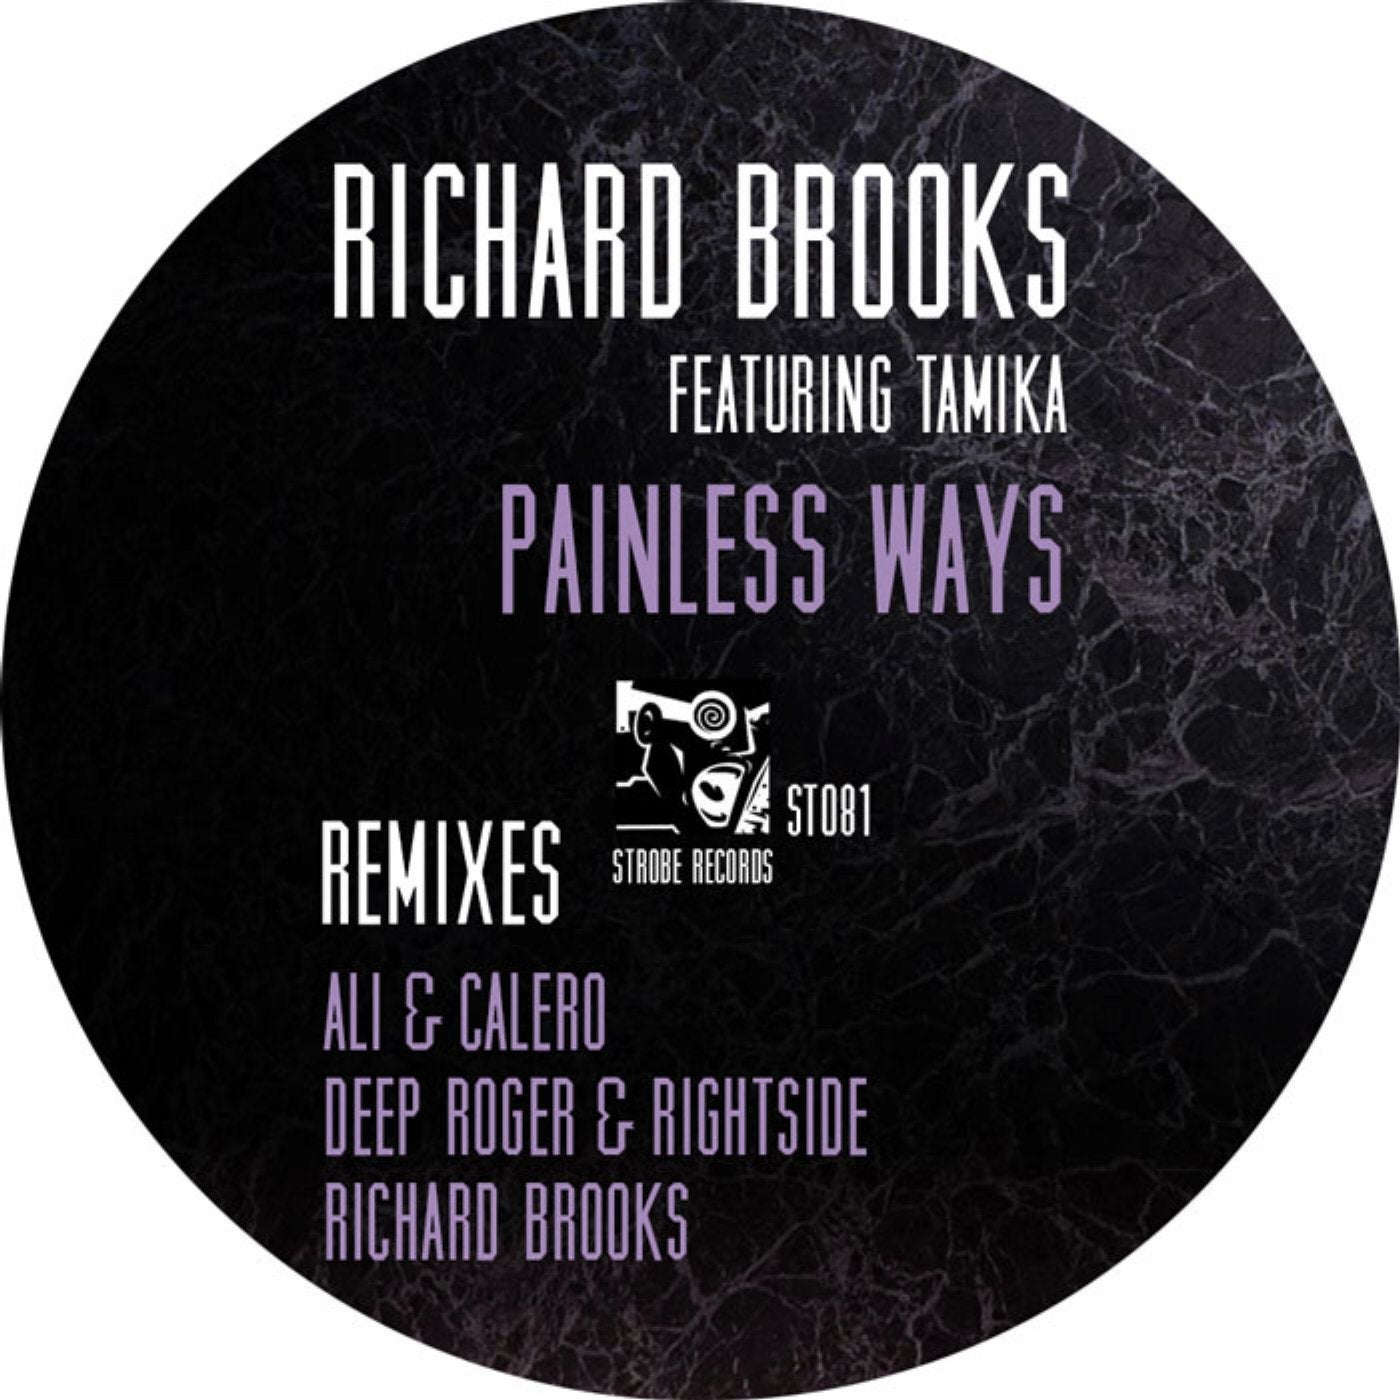 Richard Brooks Featuring Tamika "Painless Ways" REMIXES